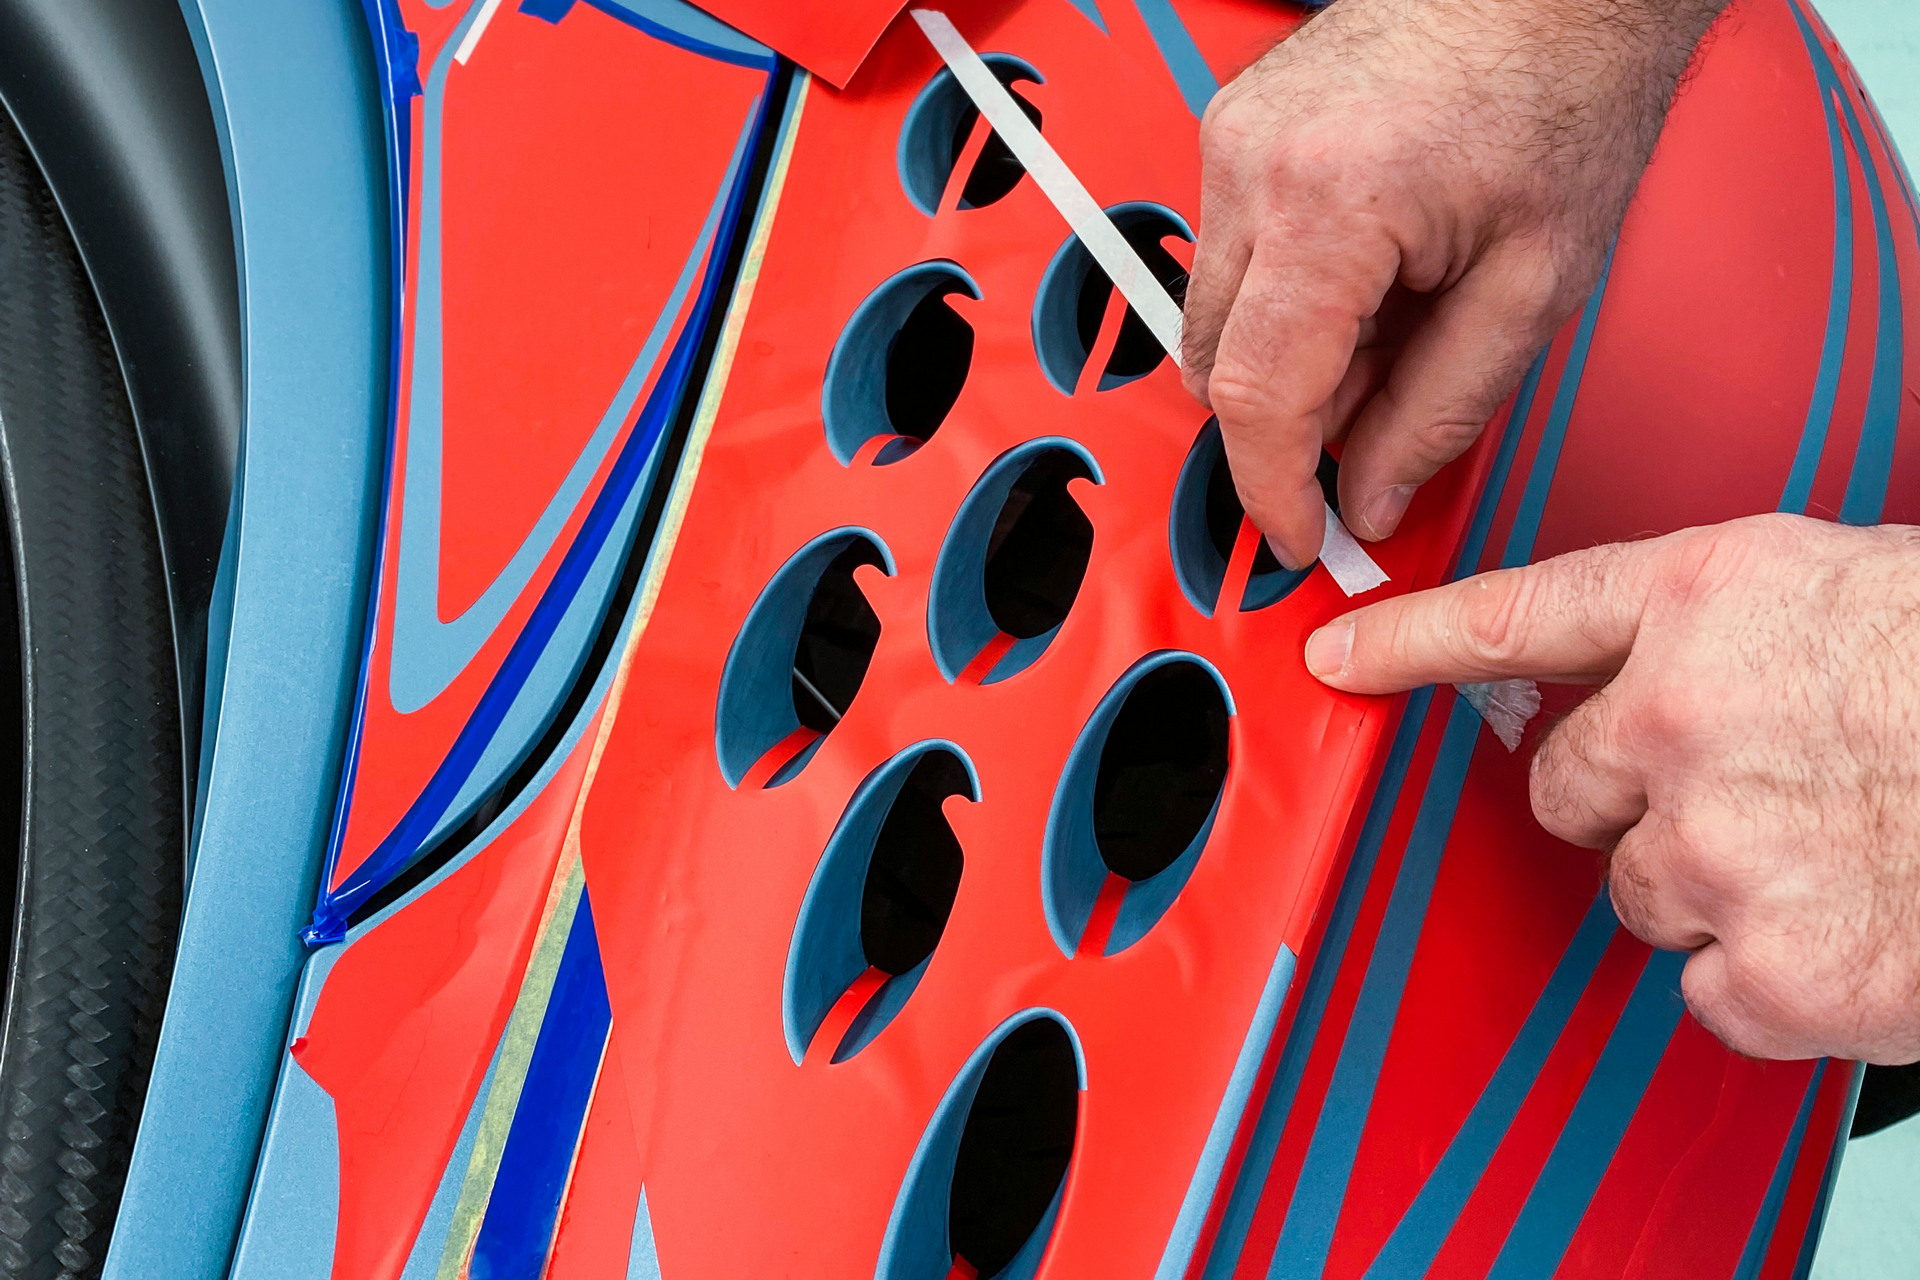 Ngắm nhìn bộ đôi Bugatti Chiron sở hữu màu sơn mất 5 tuần để hoàn thiện